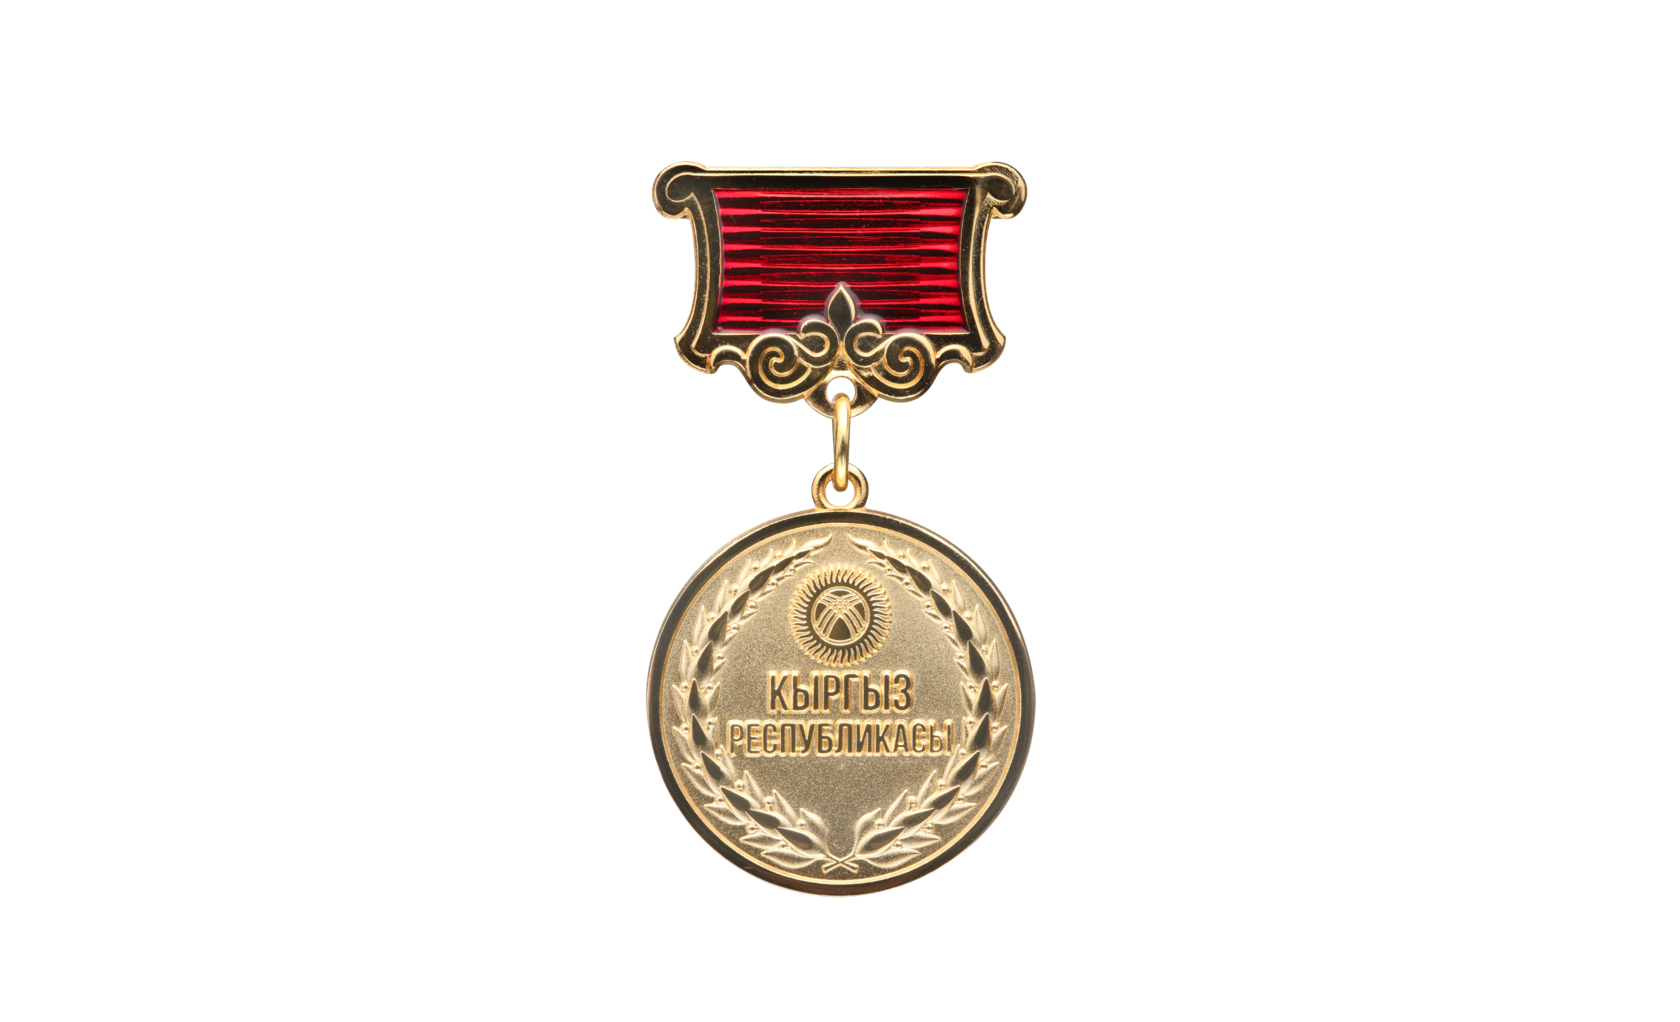 Награда присуждается. Награды медали. Орден или медаль. Ордена и медали Кыргызстана. Медаль или награда.